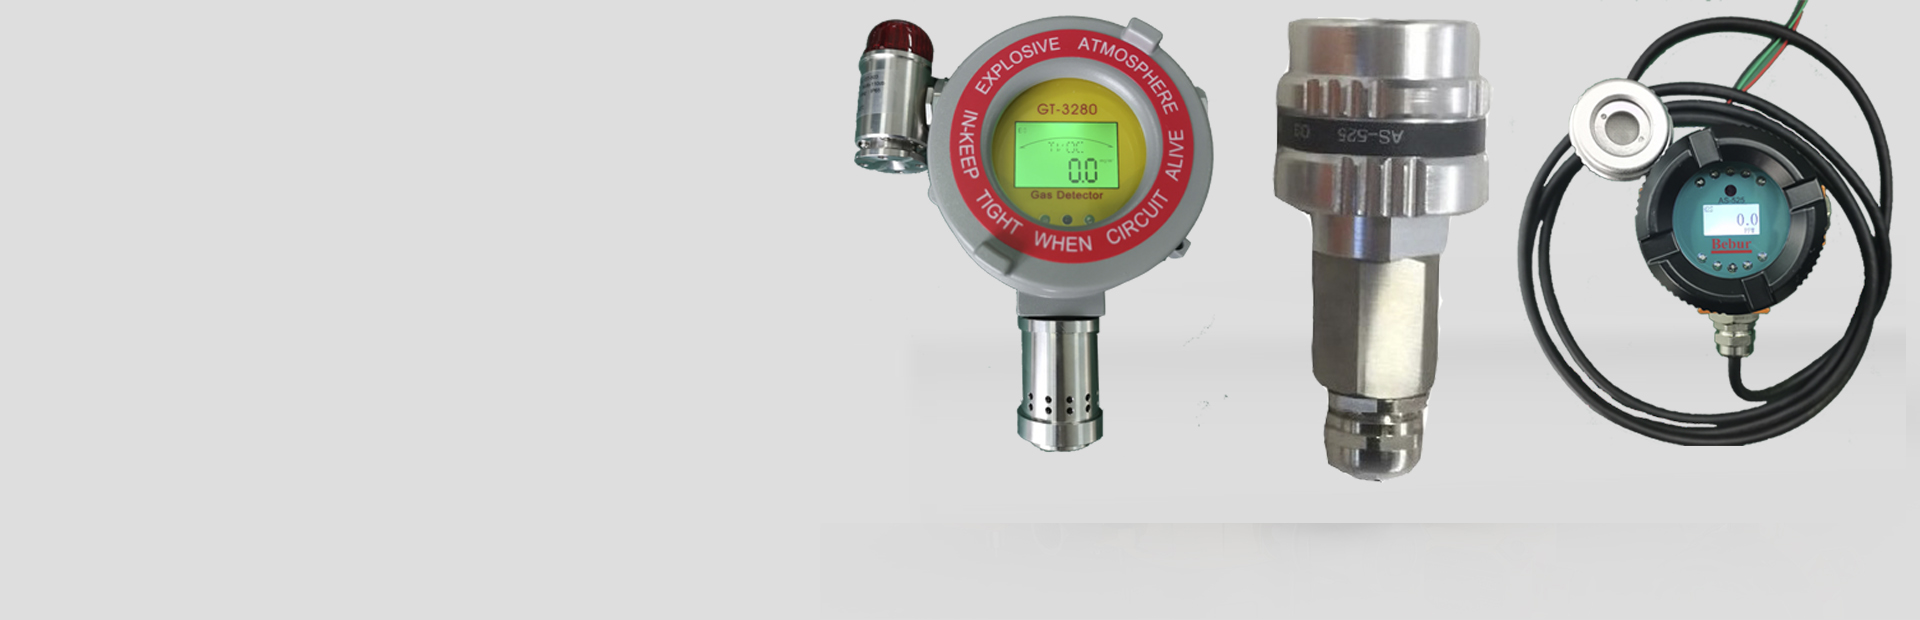 BT6108-UV254紫外光谱水质分析仪系列产品